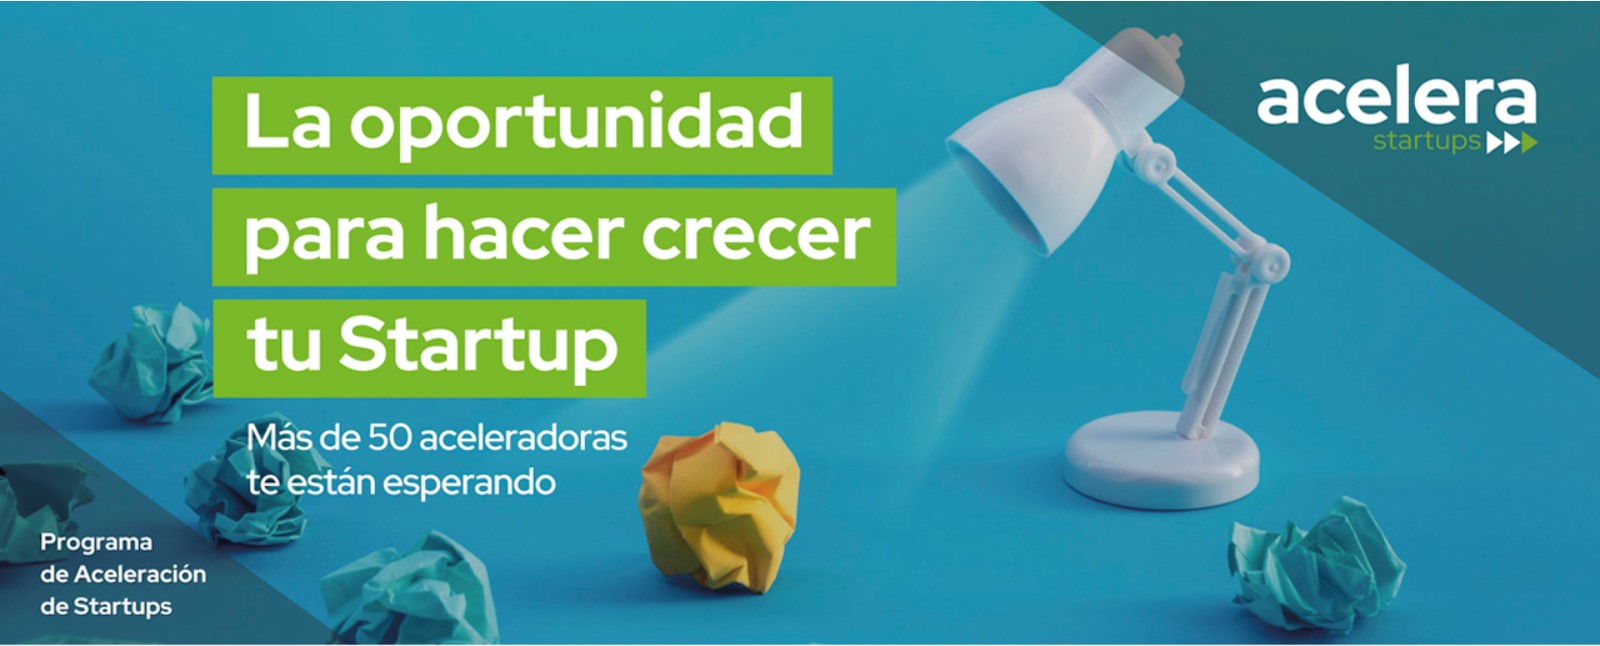 cartel del programa acelera startups Aragón con una lámpara de mesa blanca dando luz a unas bolas de papel de colores